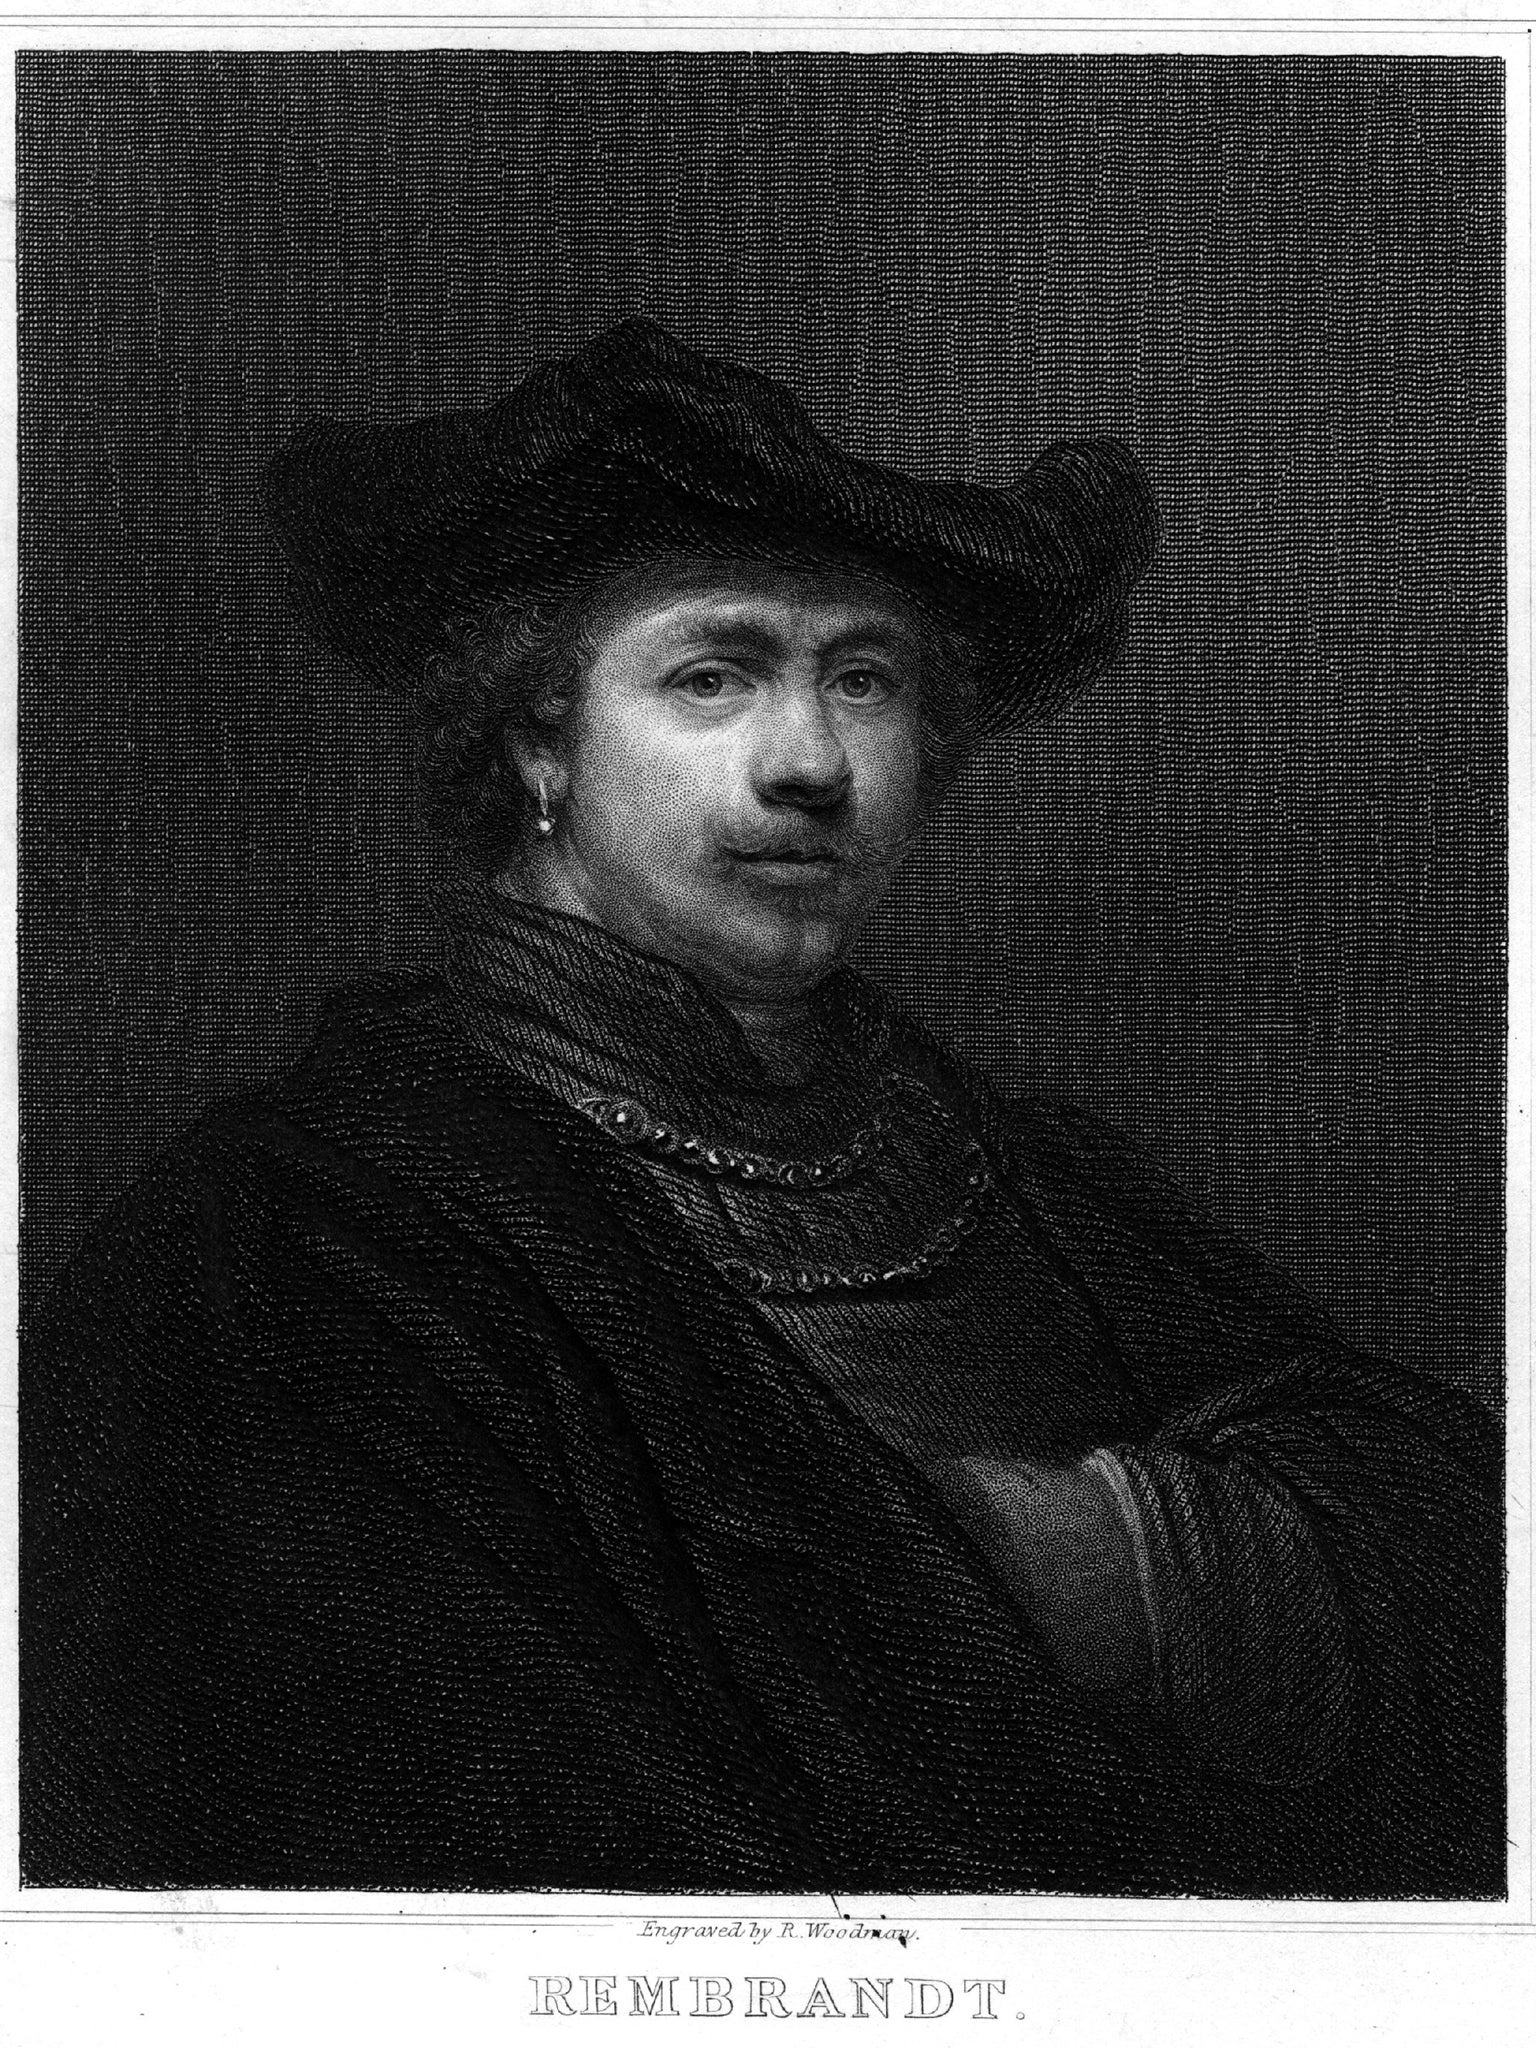 &#13;
A portrait of Rembrandt, circa 1642 (Getty)&#13;